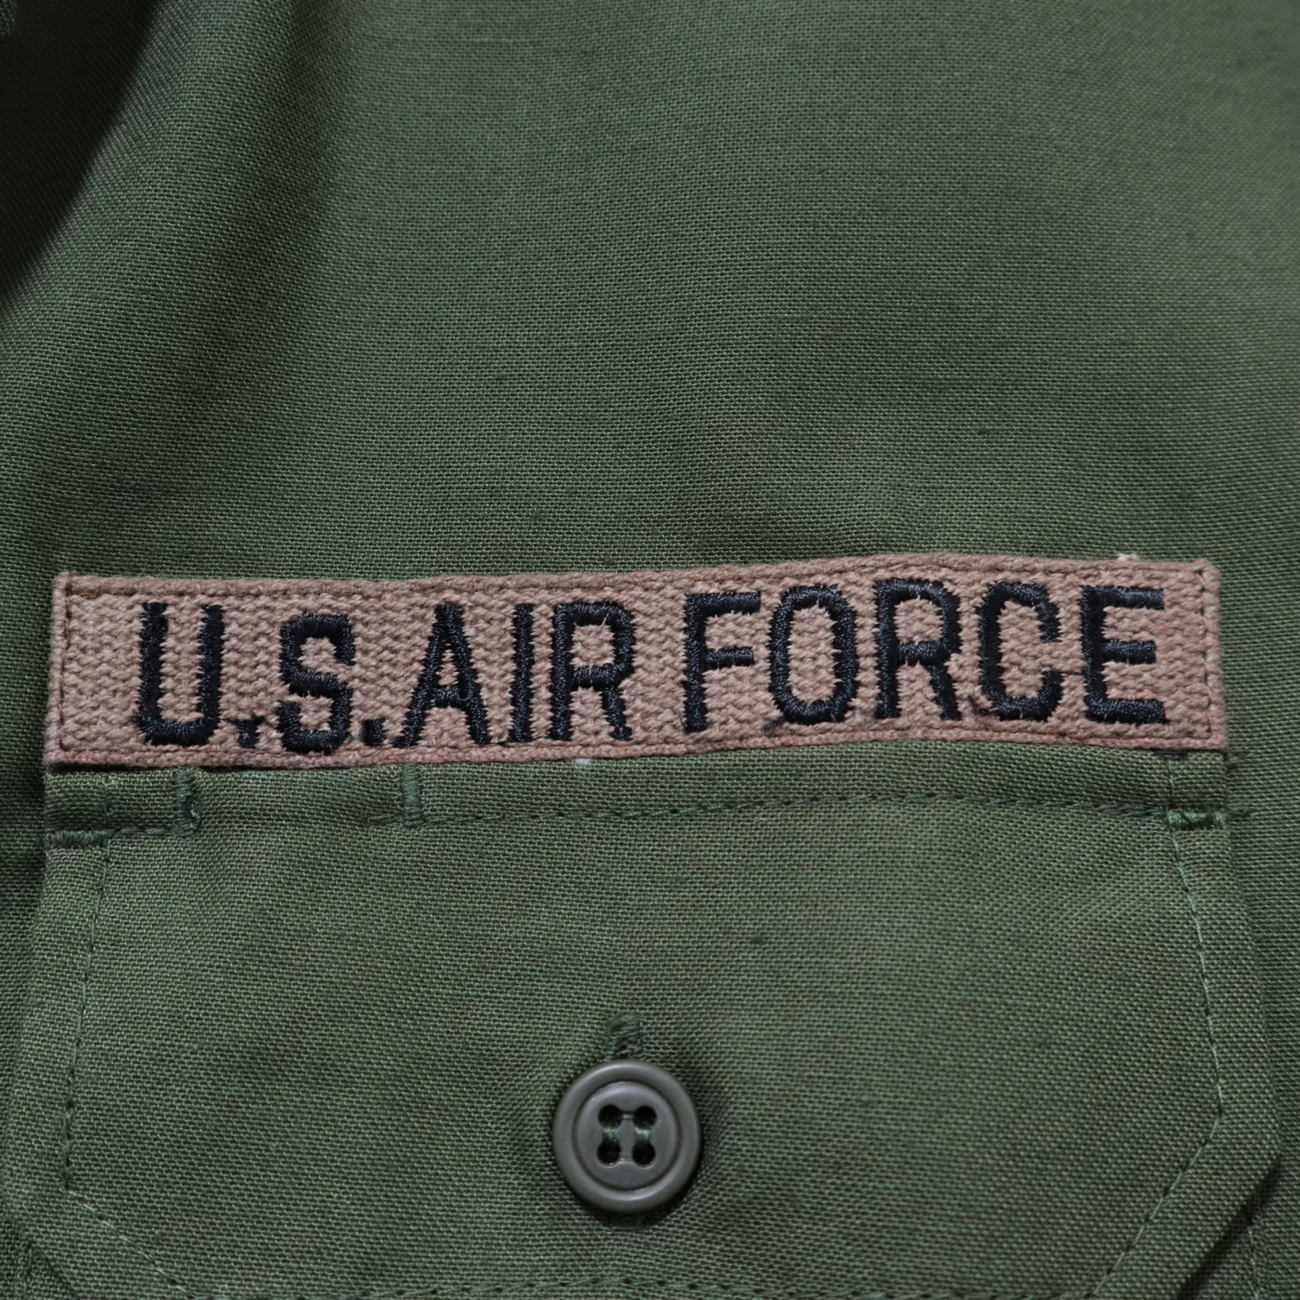 アメリカ空軍に由来するワッペンや刺繍が配された『パッチアーミー